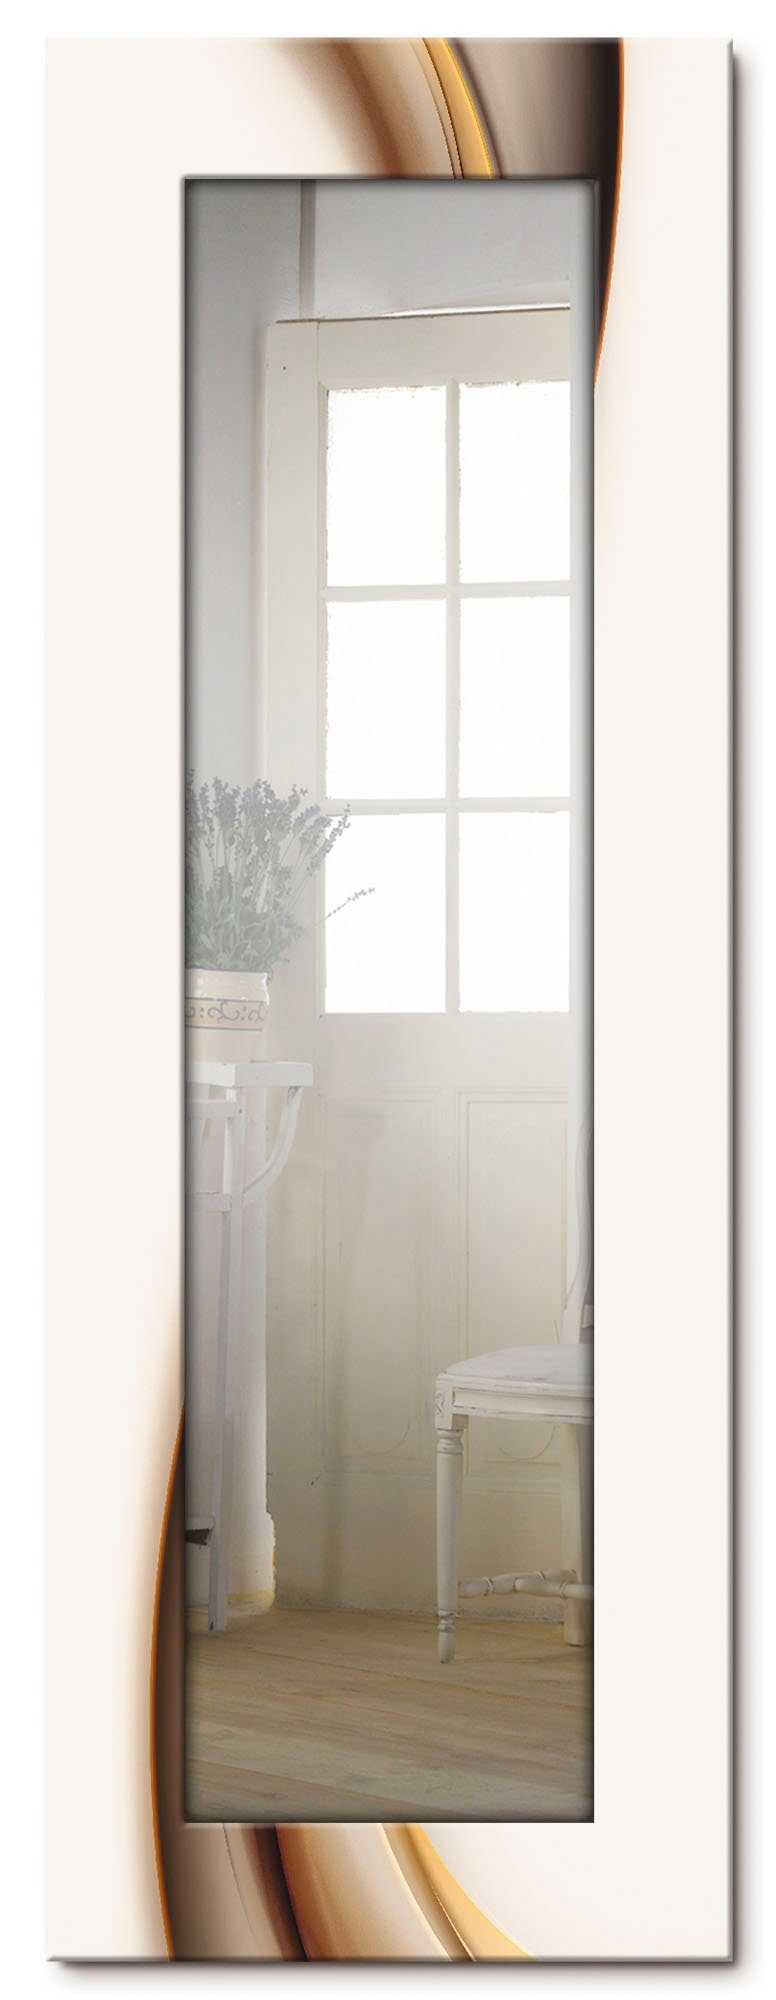 Artland Sierspiegel Golf ingelijste spiegel voor het hele lichaam met motiefrand, geschikt voor kleine, smalle hal, halspiegel, mirror spiegel omrand om op te hangen